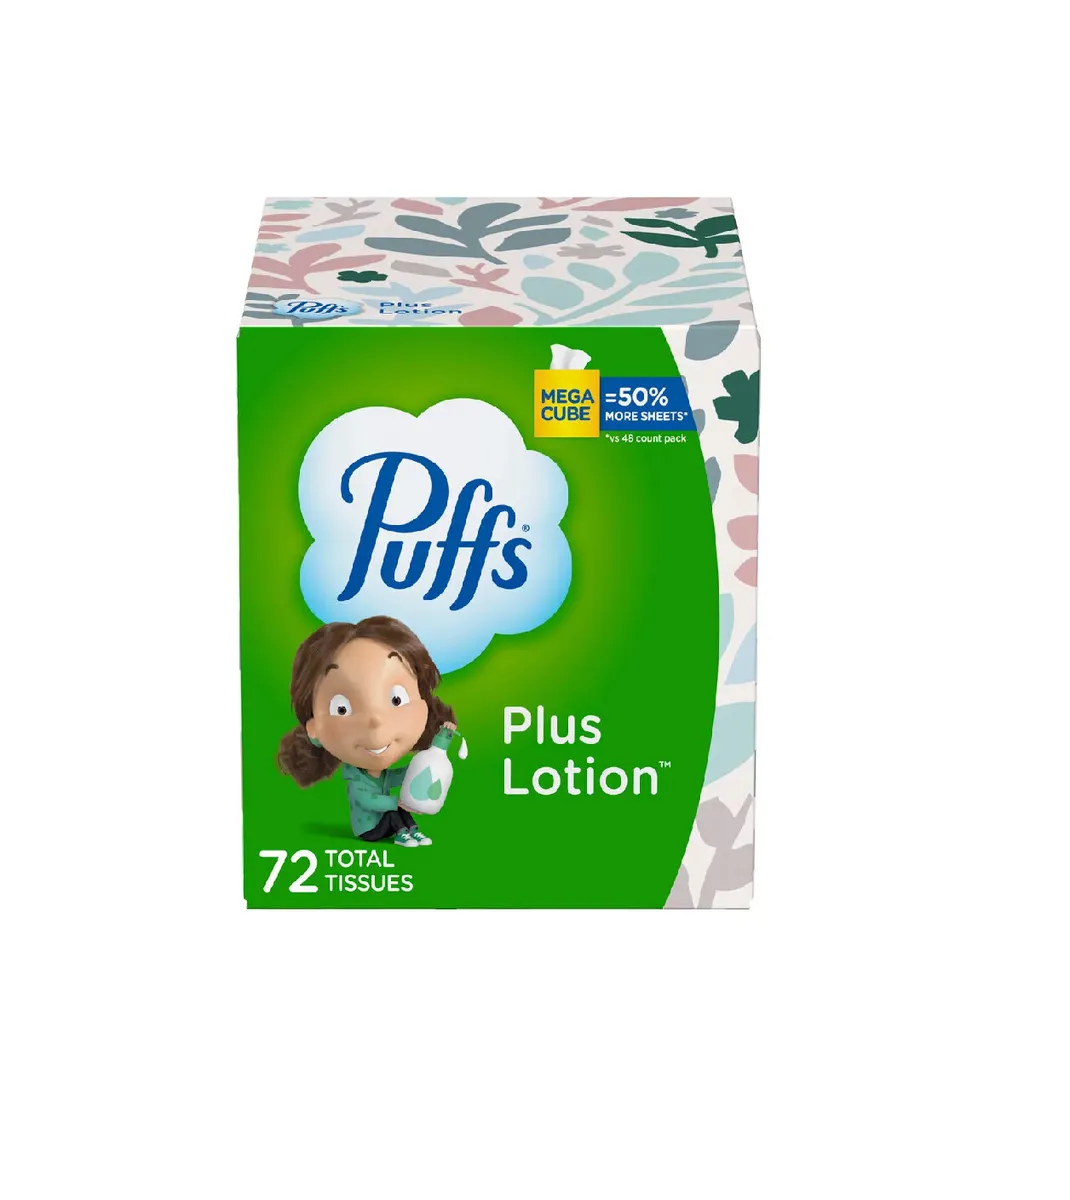 Puffs Plus Lotion Facial Tissue, 1 Mega Cube, 72 Facial Tissues per Box